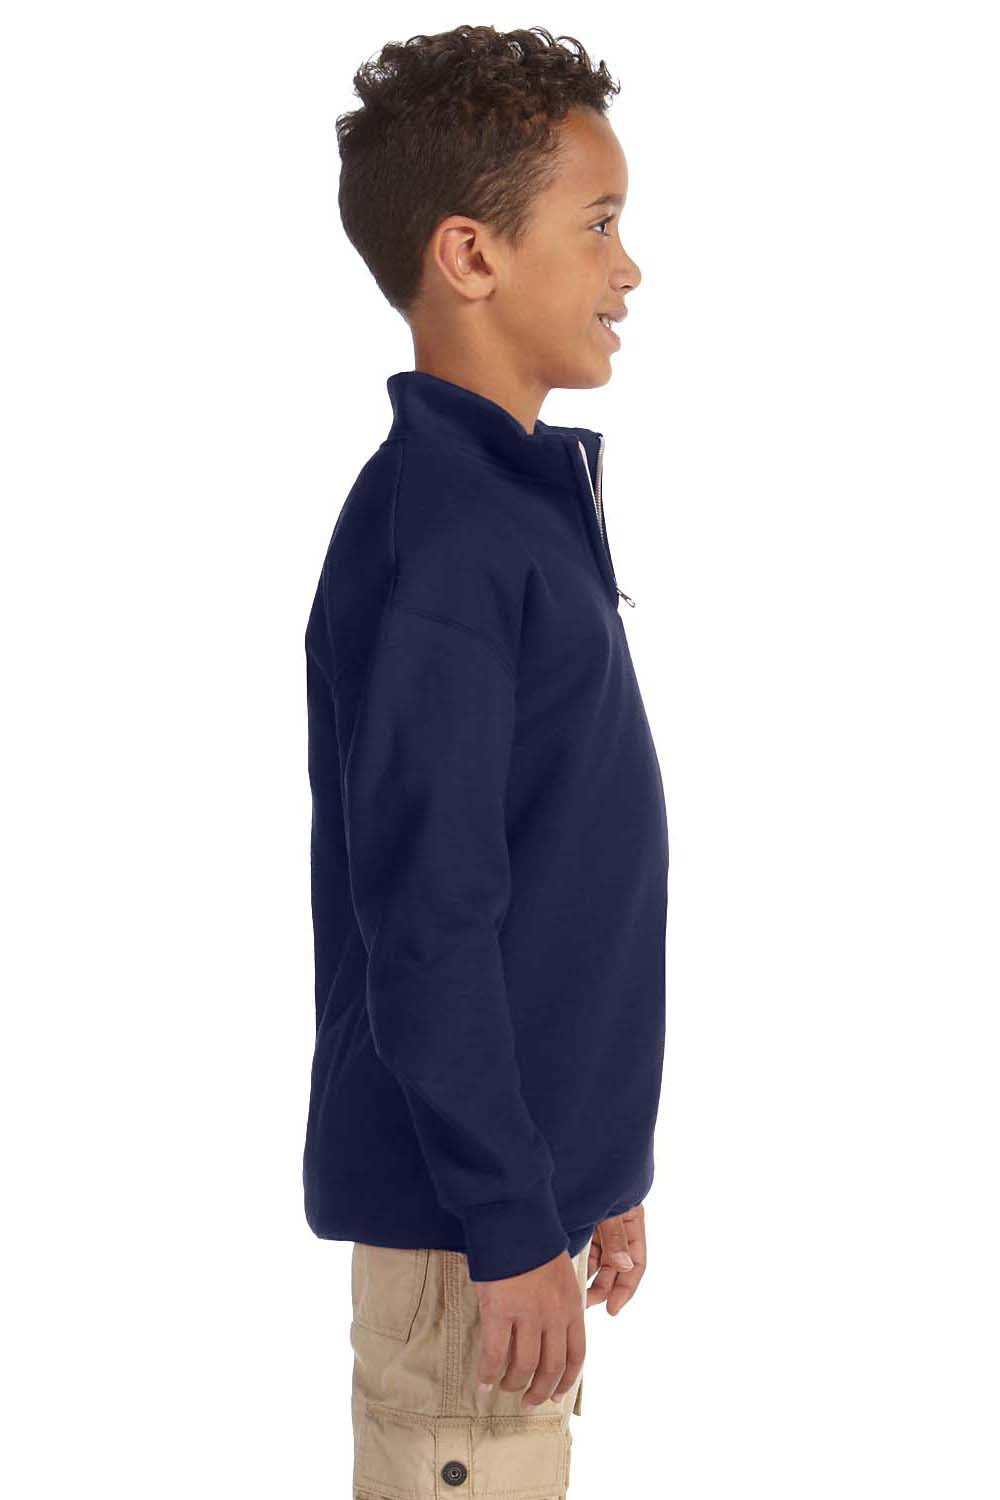 Jerzees 995Y Youth NuBlend Fleece 1/4 Zip Sweatshirt Navy Blue Side